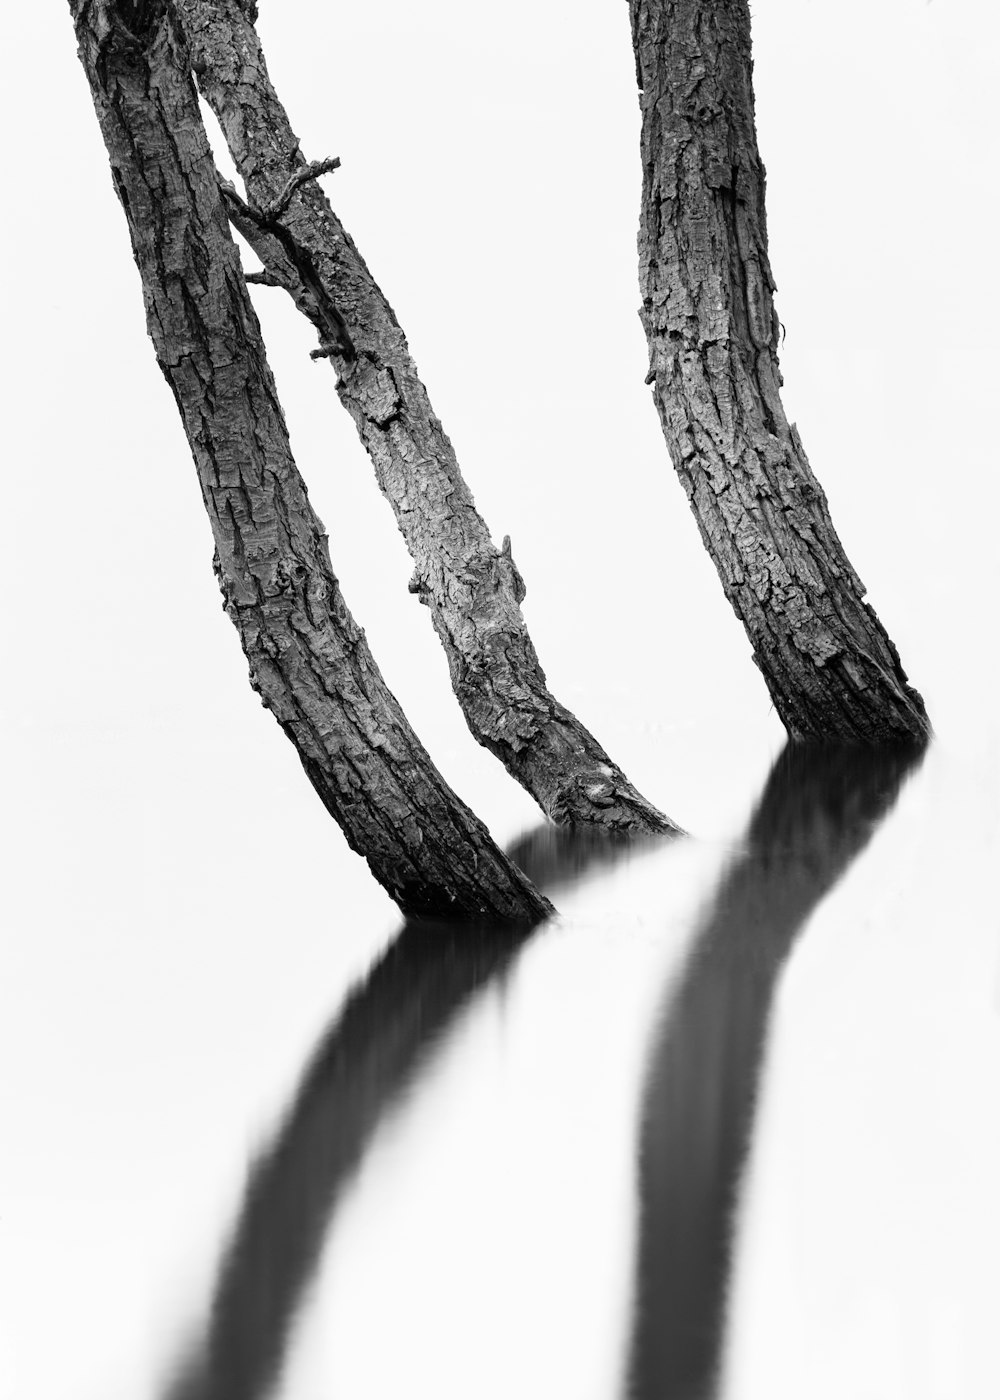 세 나무 그루터기의 회색조 사진